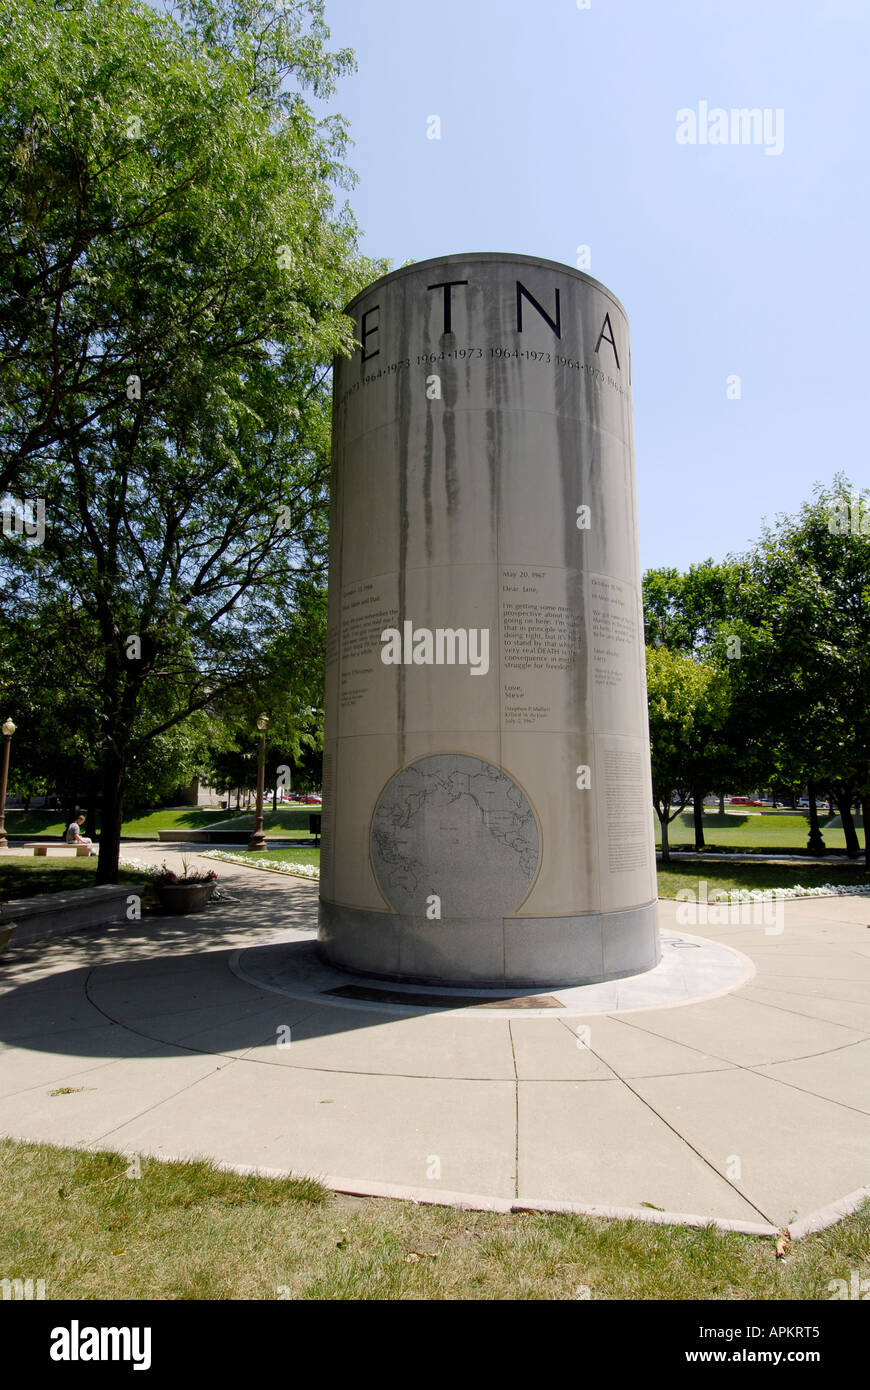 Le Vietnam à l'Université Memorial Park de commémorer la guerre Histoire du centre-ville d'Indianapolis dans l'Indiana Banque D'Images